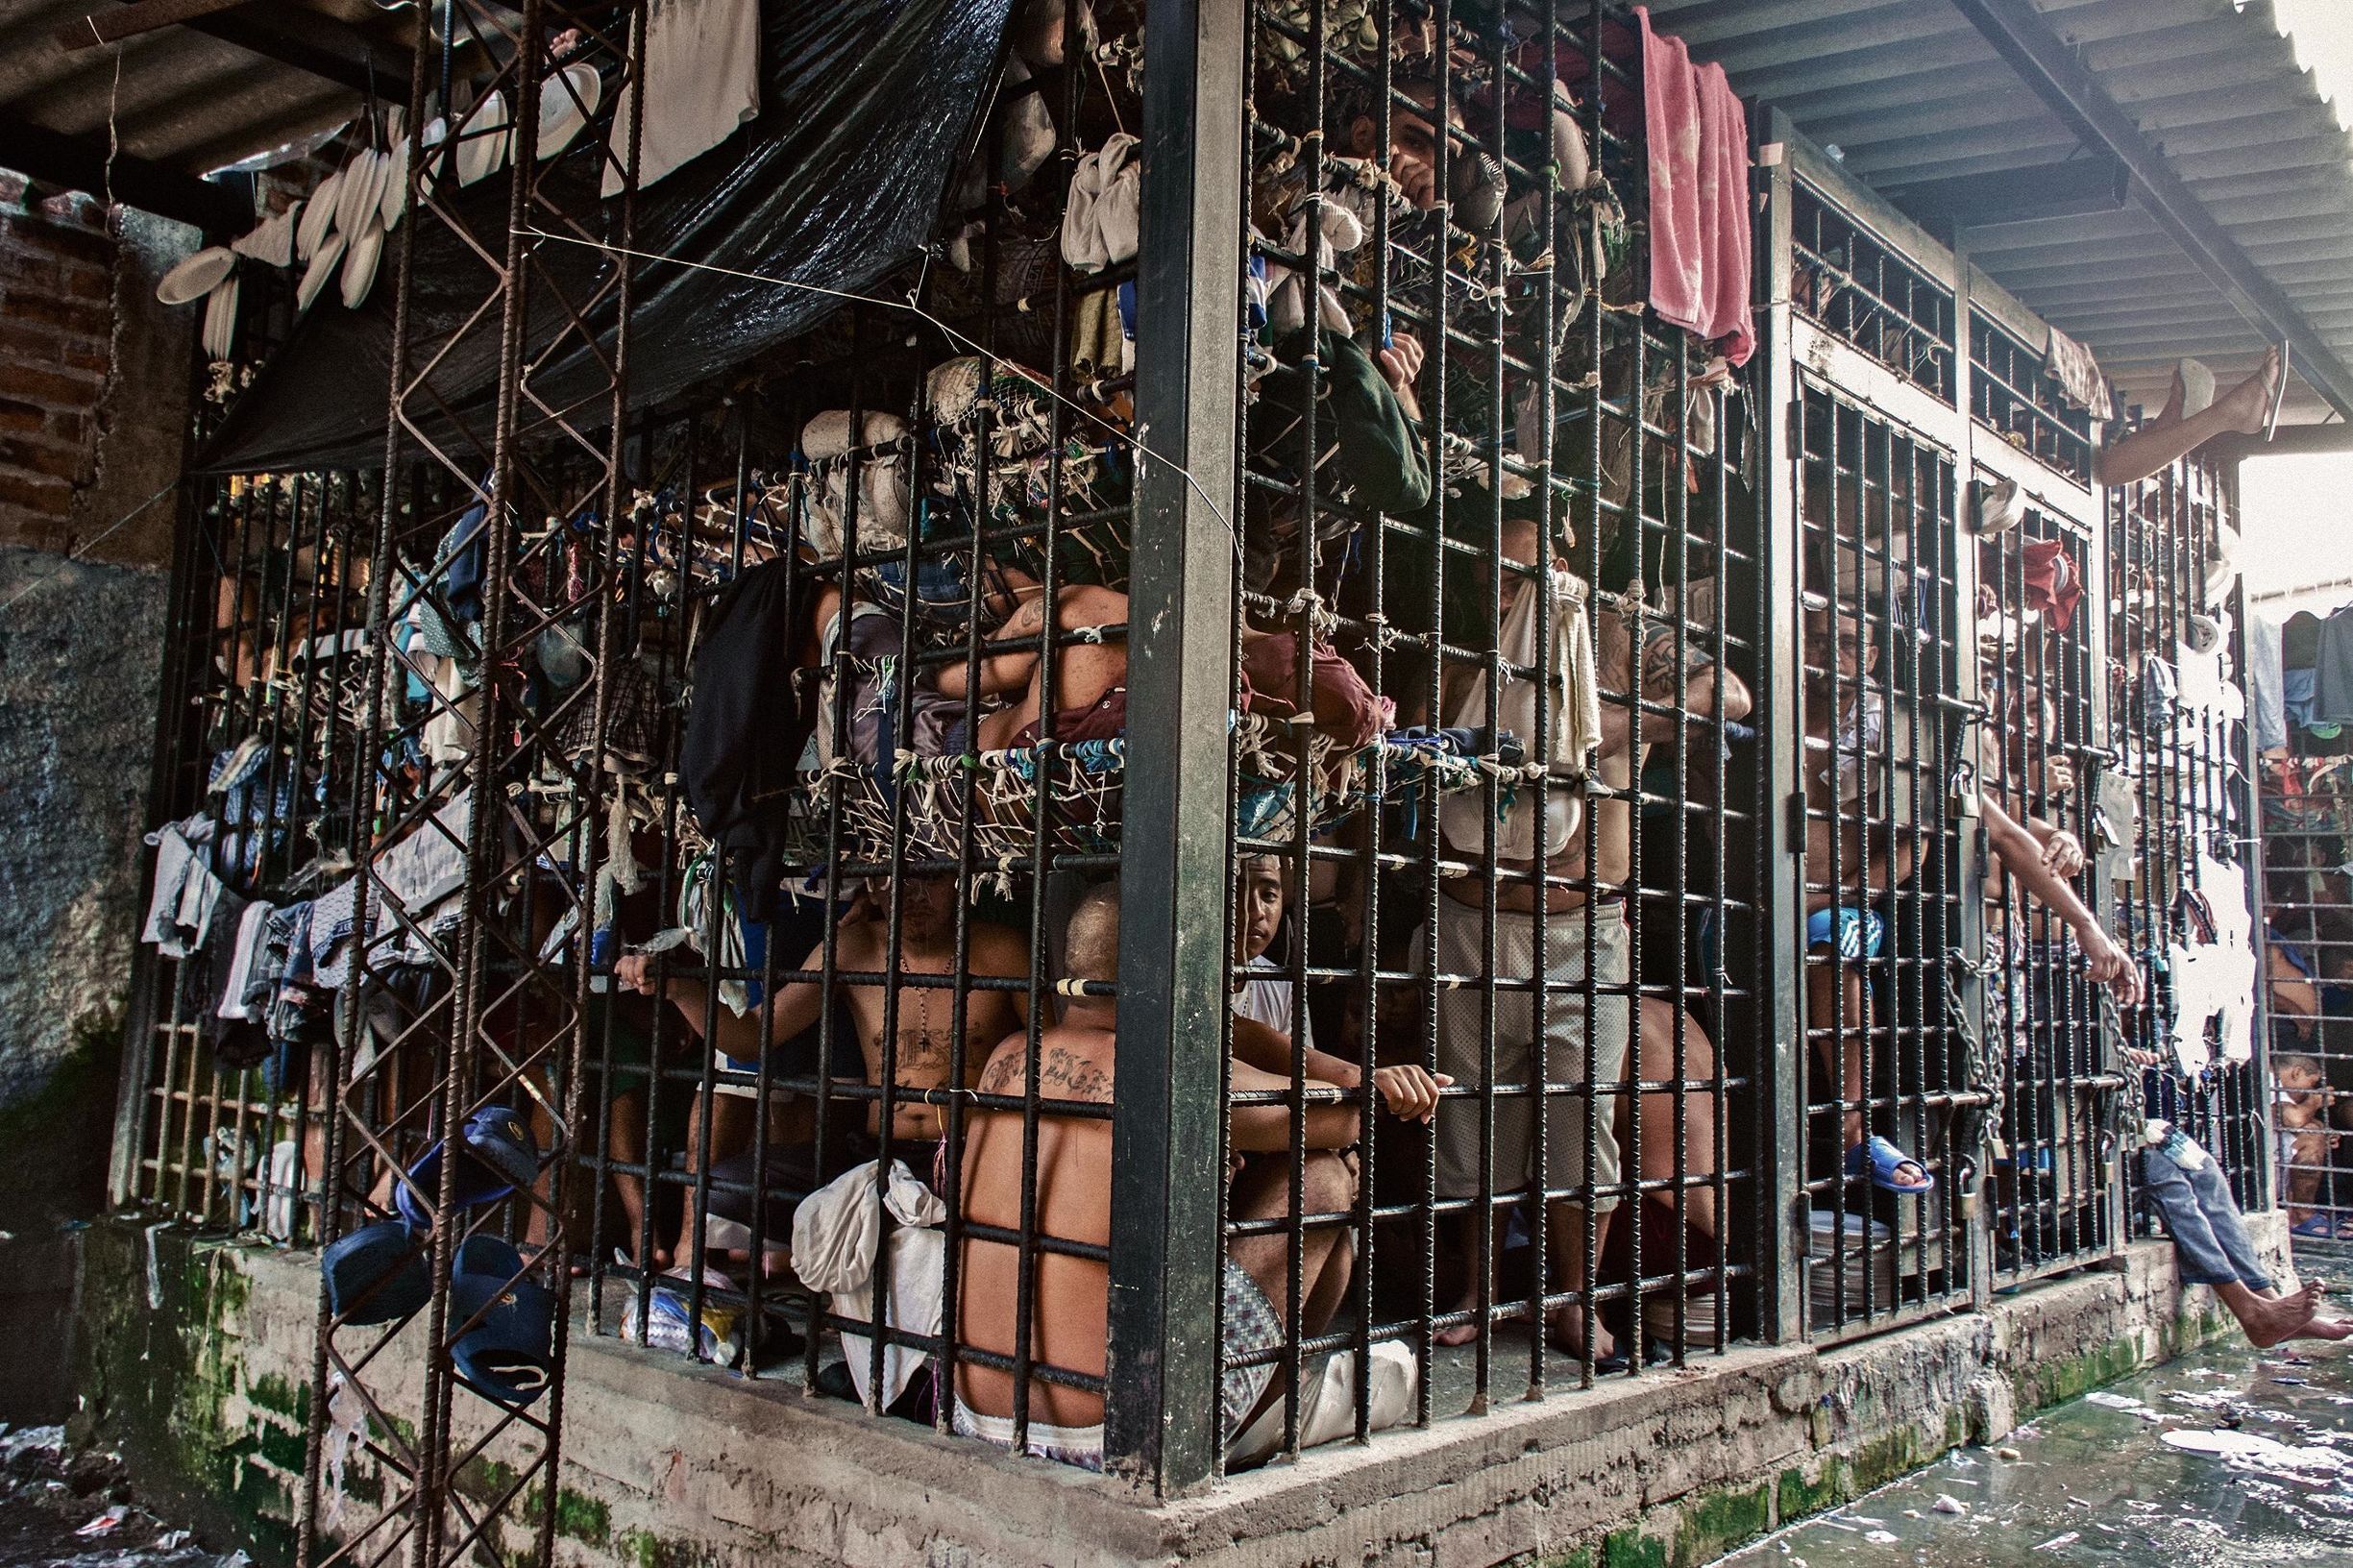 世界上最小的监狱:只有一个大铁笼子,关押着几十名犯人!